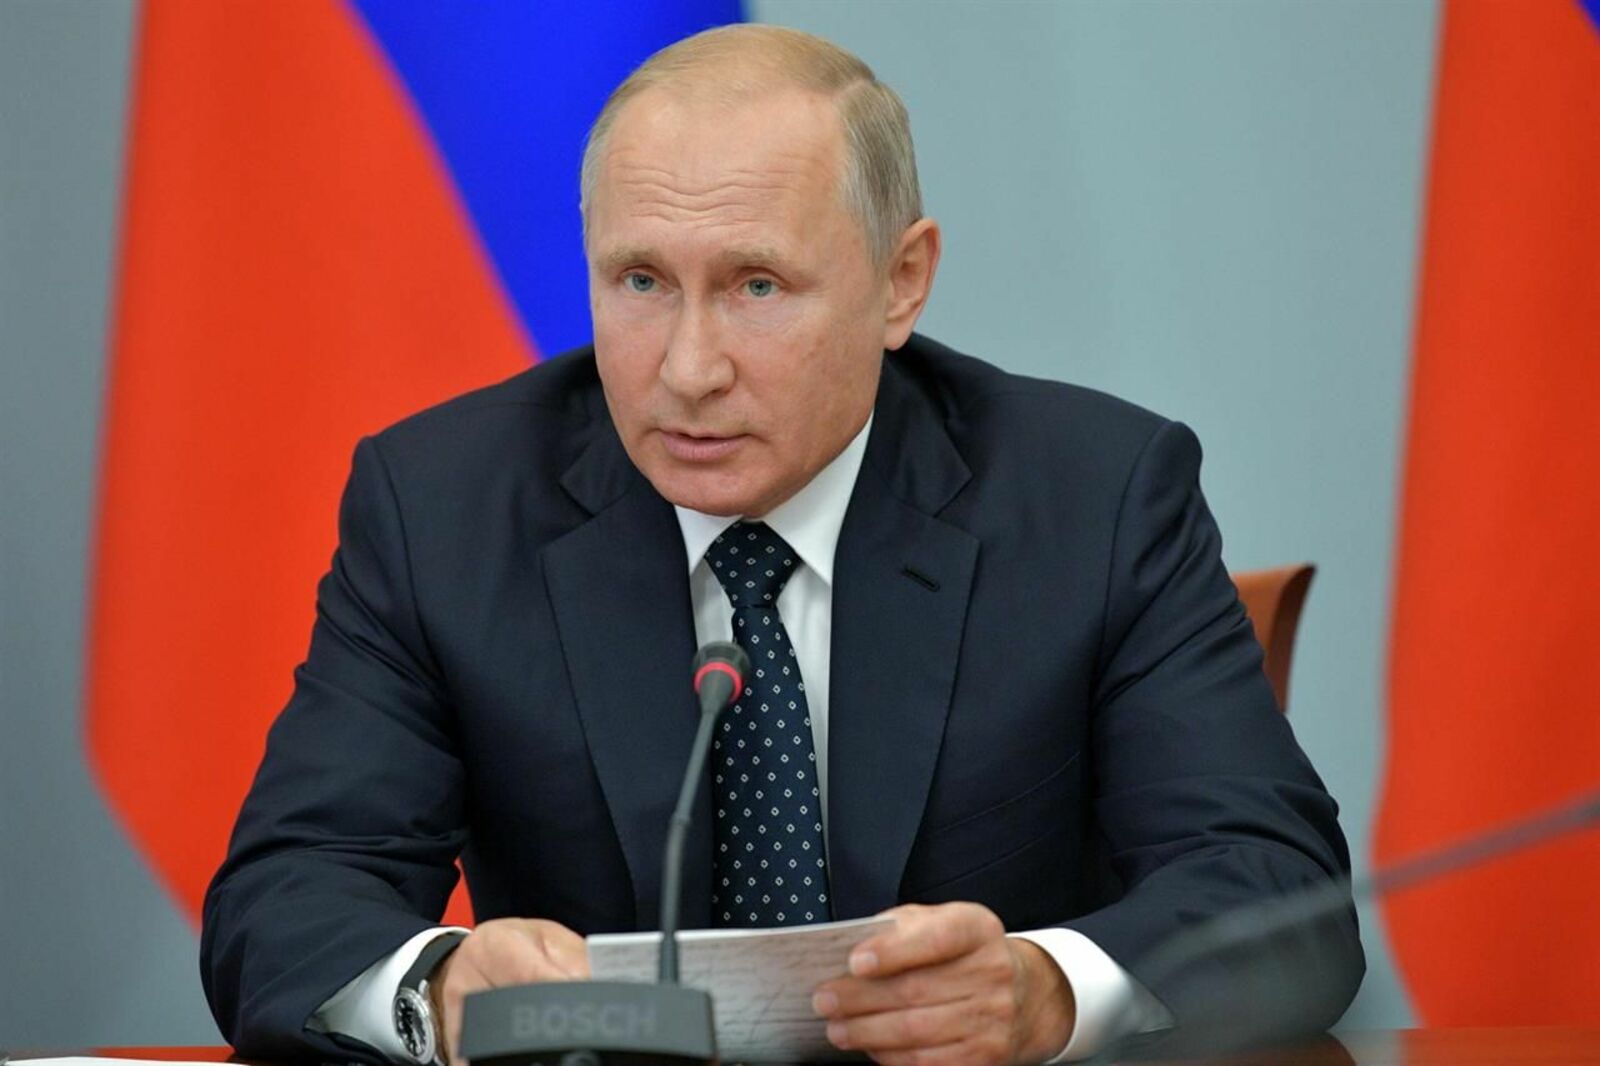 Путин отметил важность реформы контрольно-надзорной деятельности в России